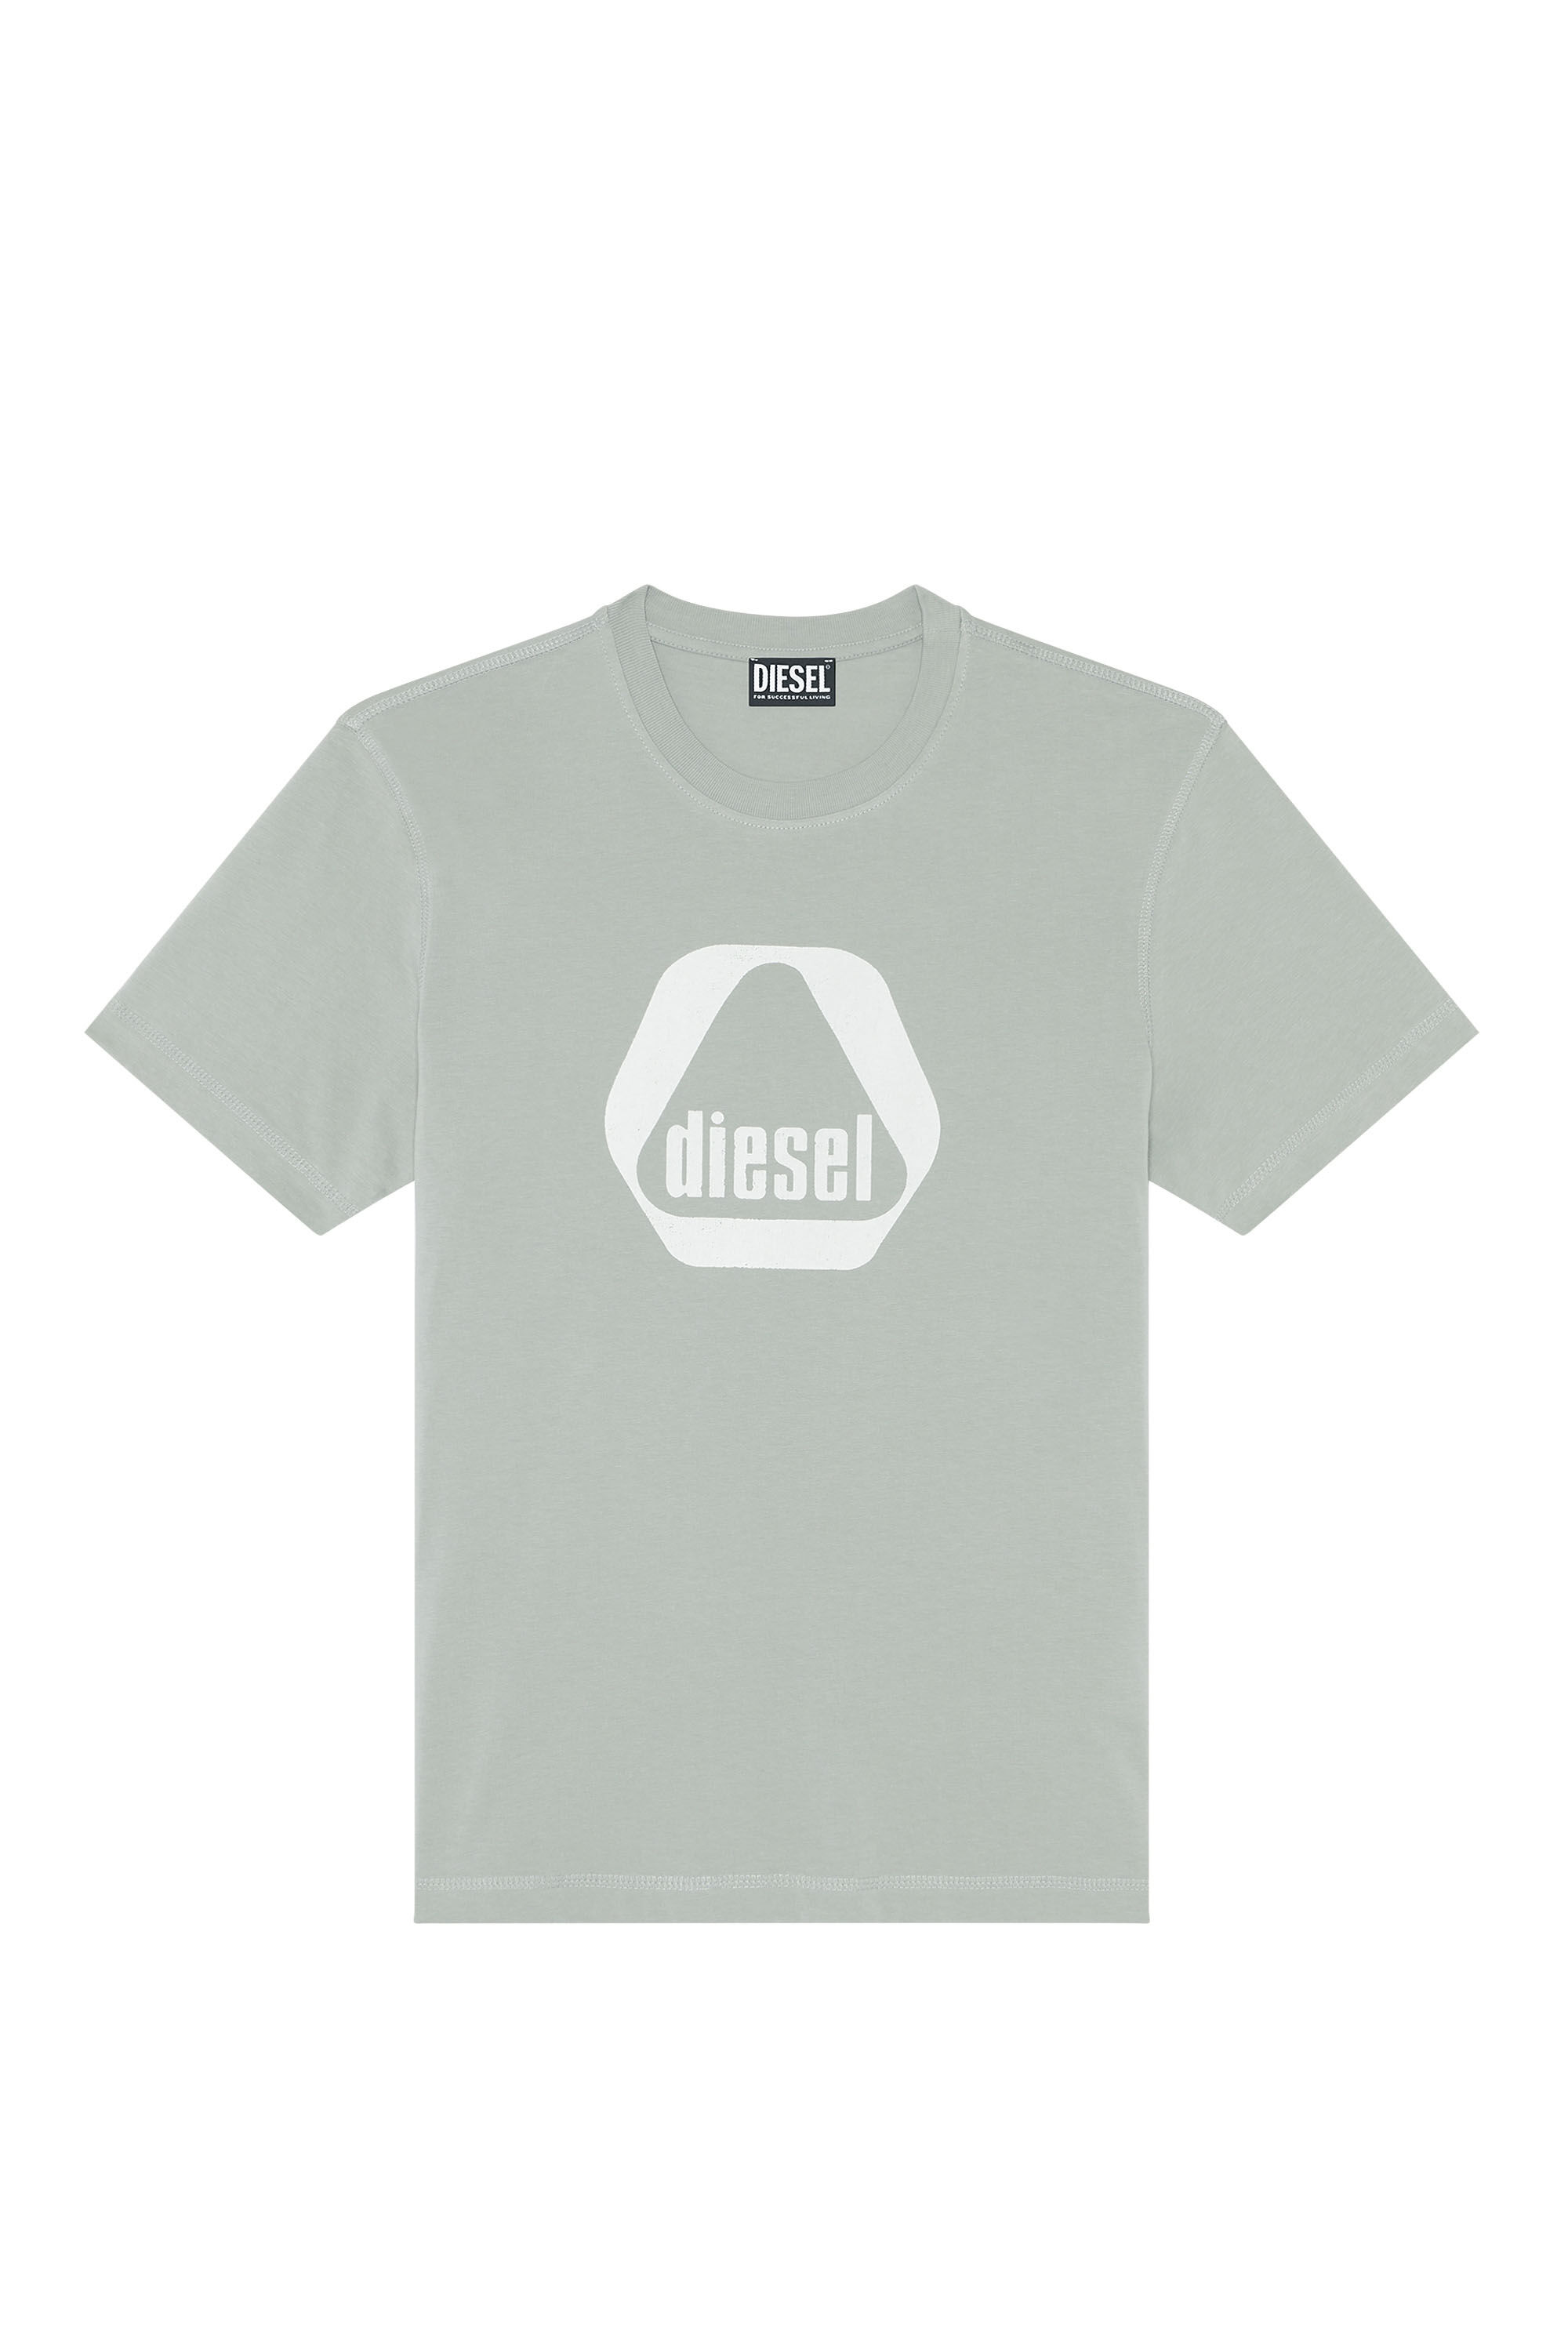 Diesel - T-DIEGOR-G10, Light Grey - Image 2